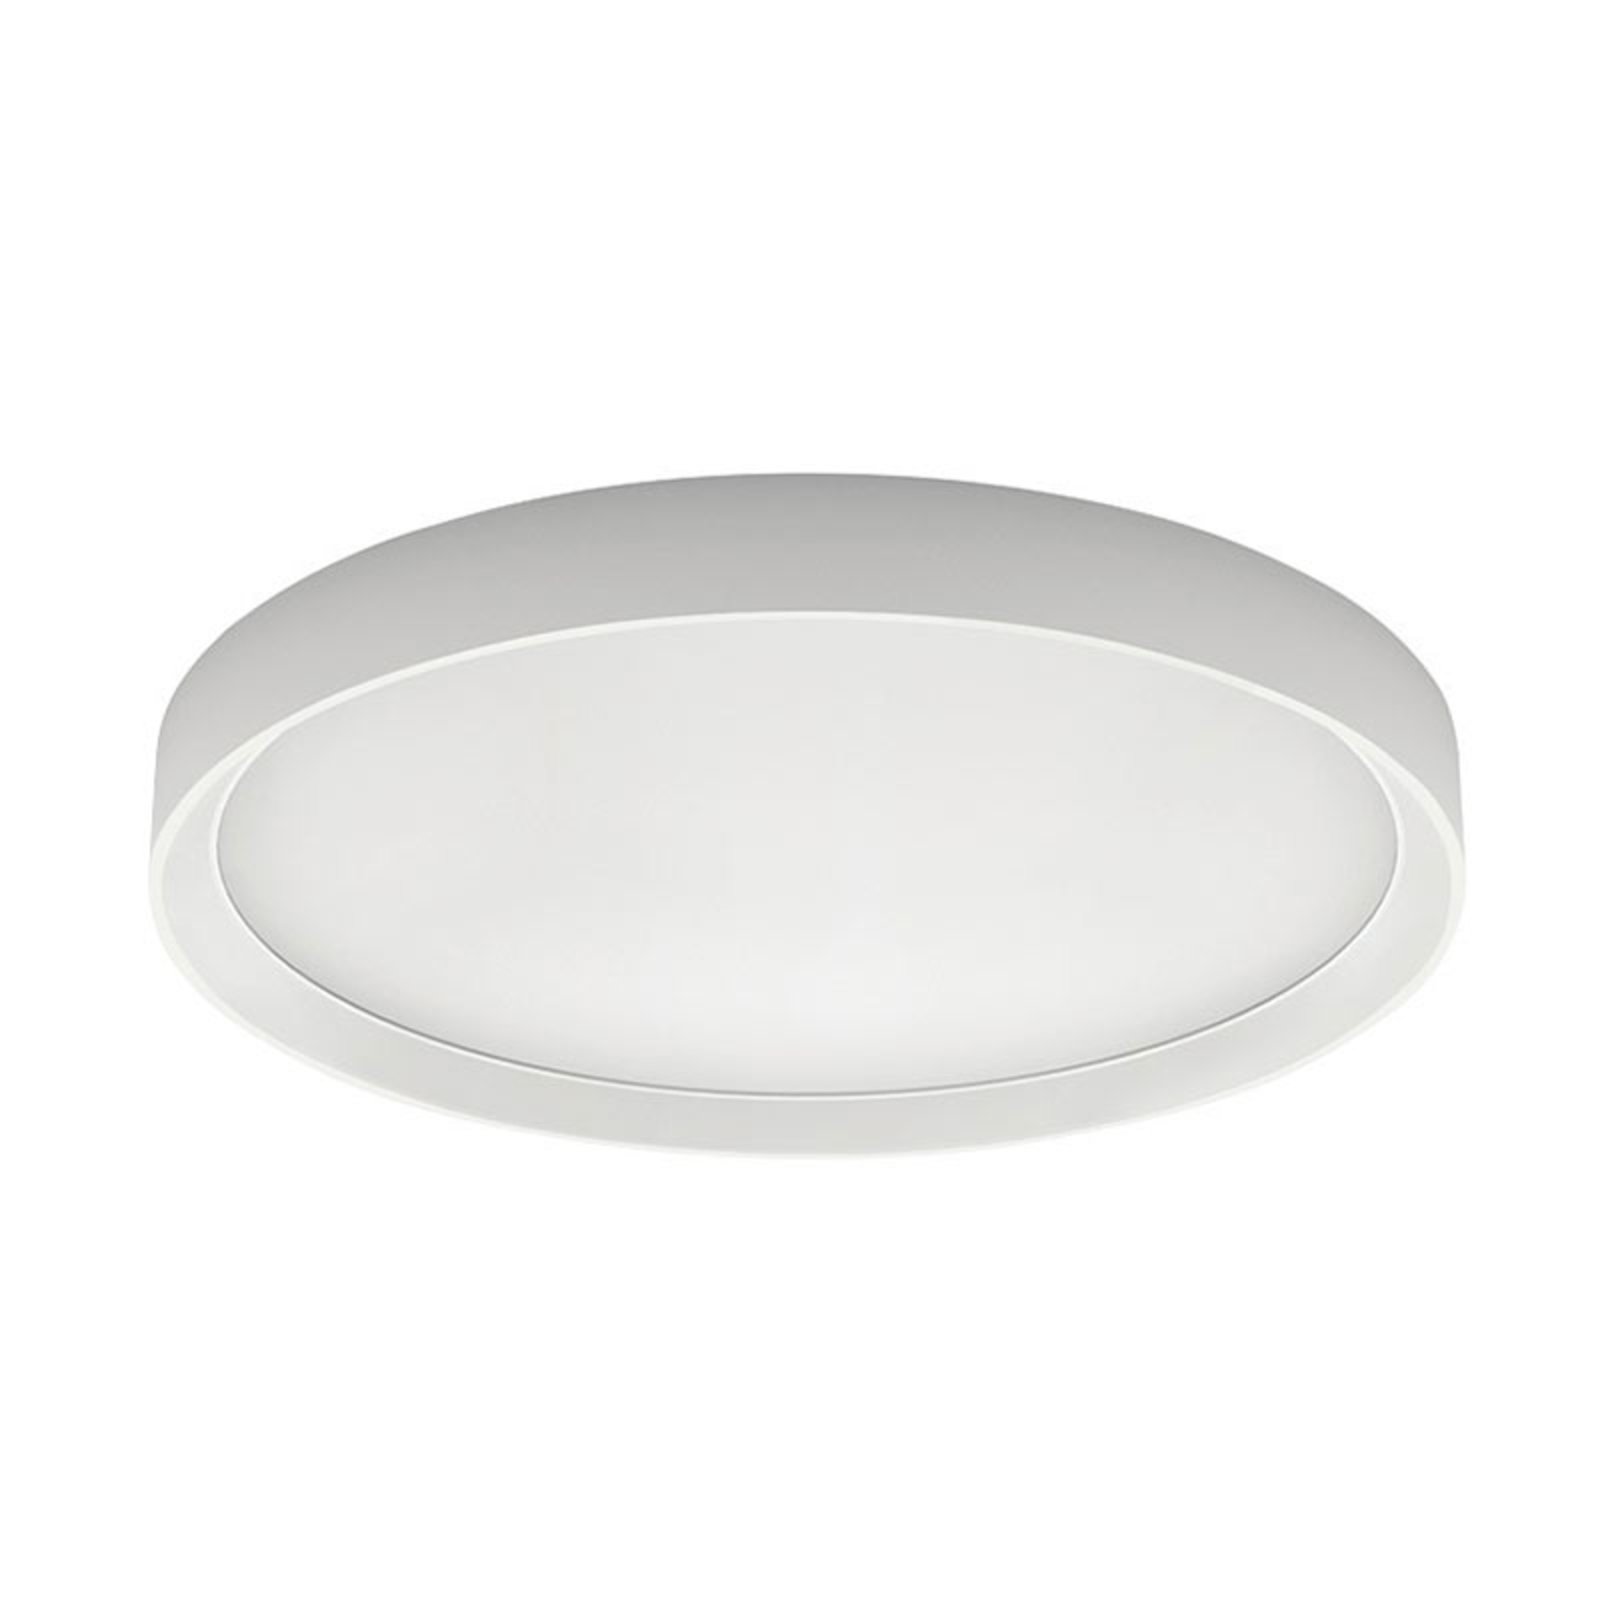 Tara R LED ceiling lamp, round, Ø 51 cm